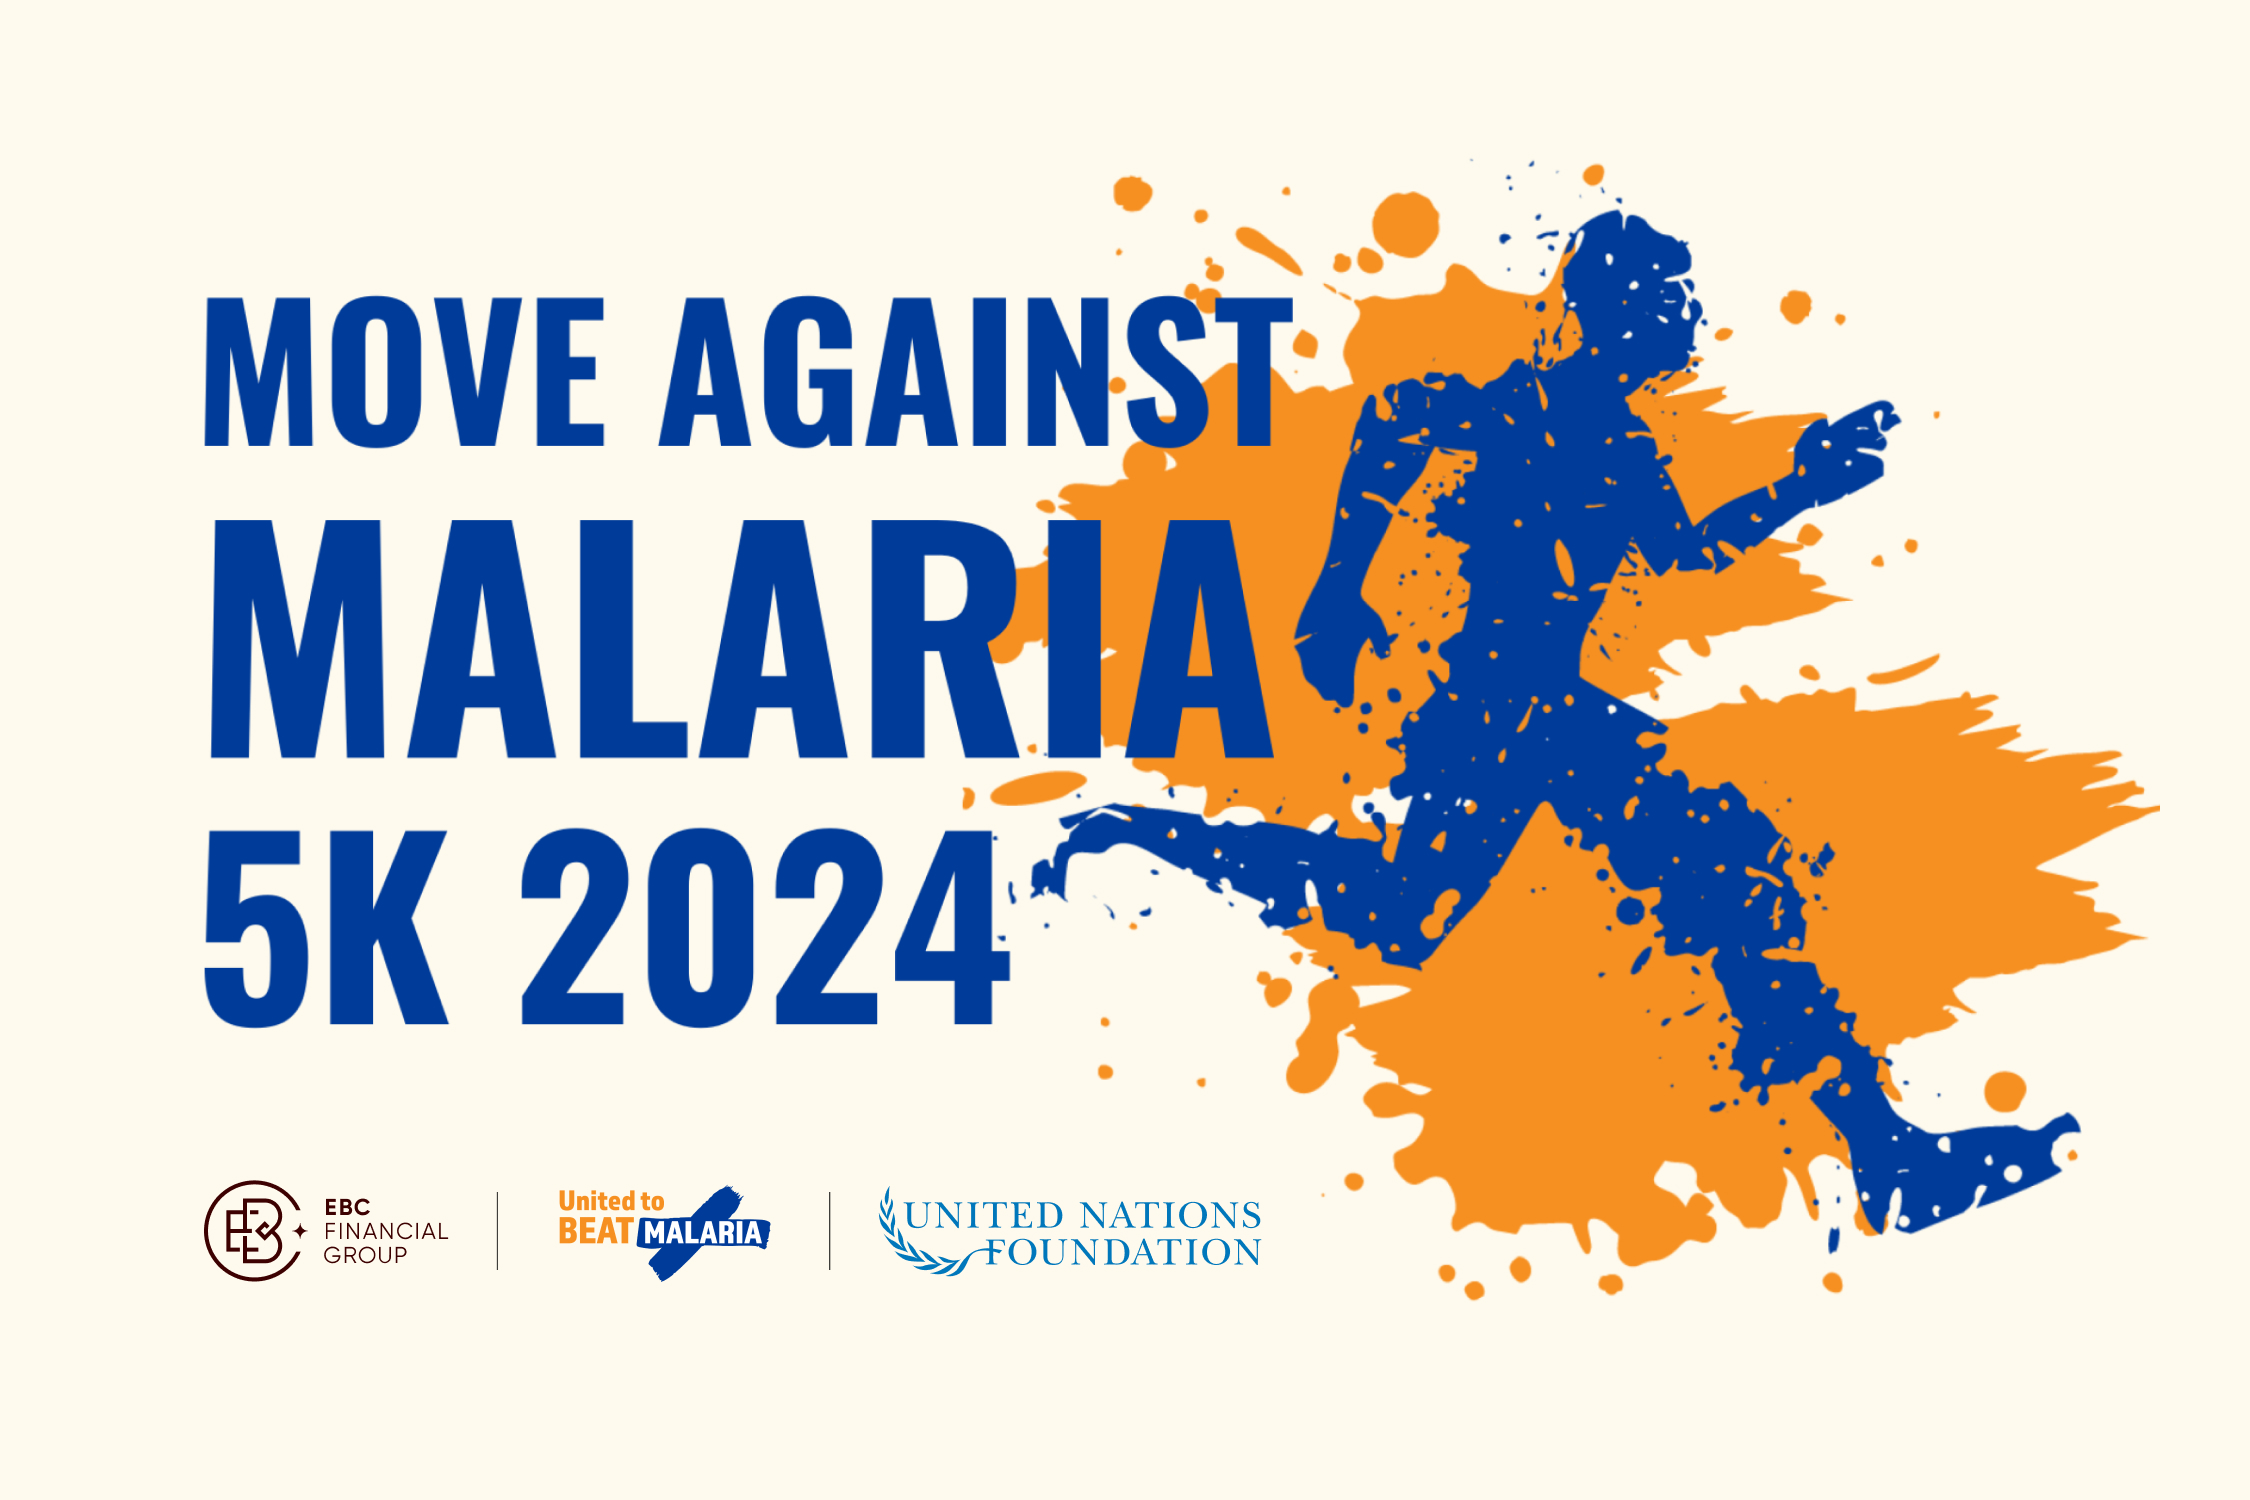 Antara 25 April - 5 Mei 2024, menyertai penyokong di seluruh dunia untuk Gerakan Melawan Malaria, acara maya untuk meraih kesedaran dan dana untuk menyokong alat dan program rawatan malaria yang menyelamatkan nyawa.